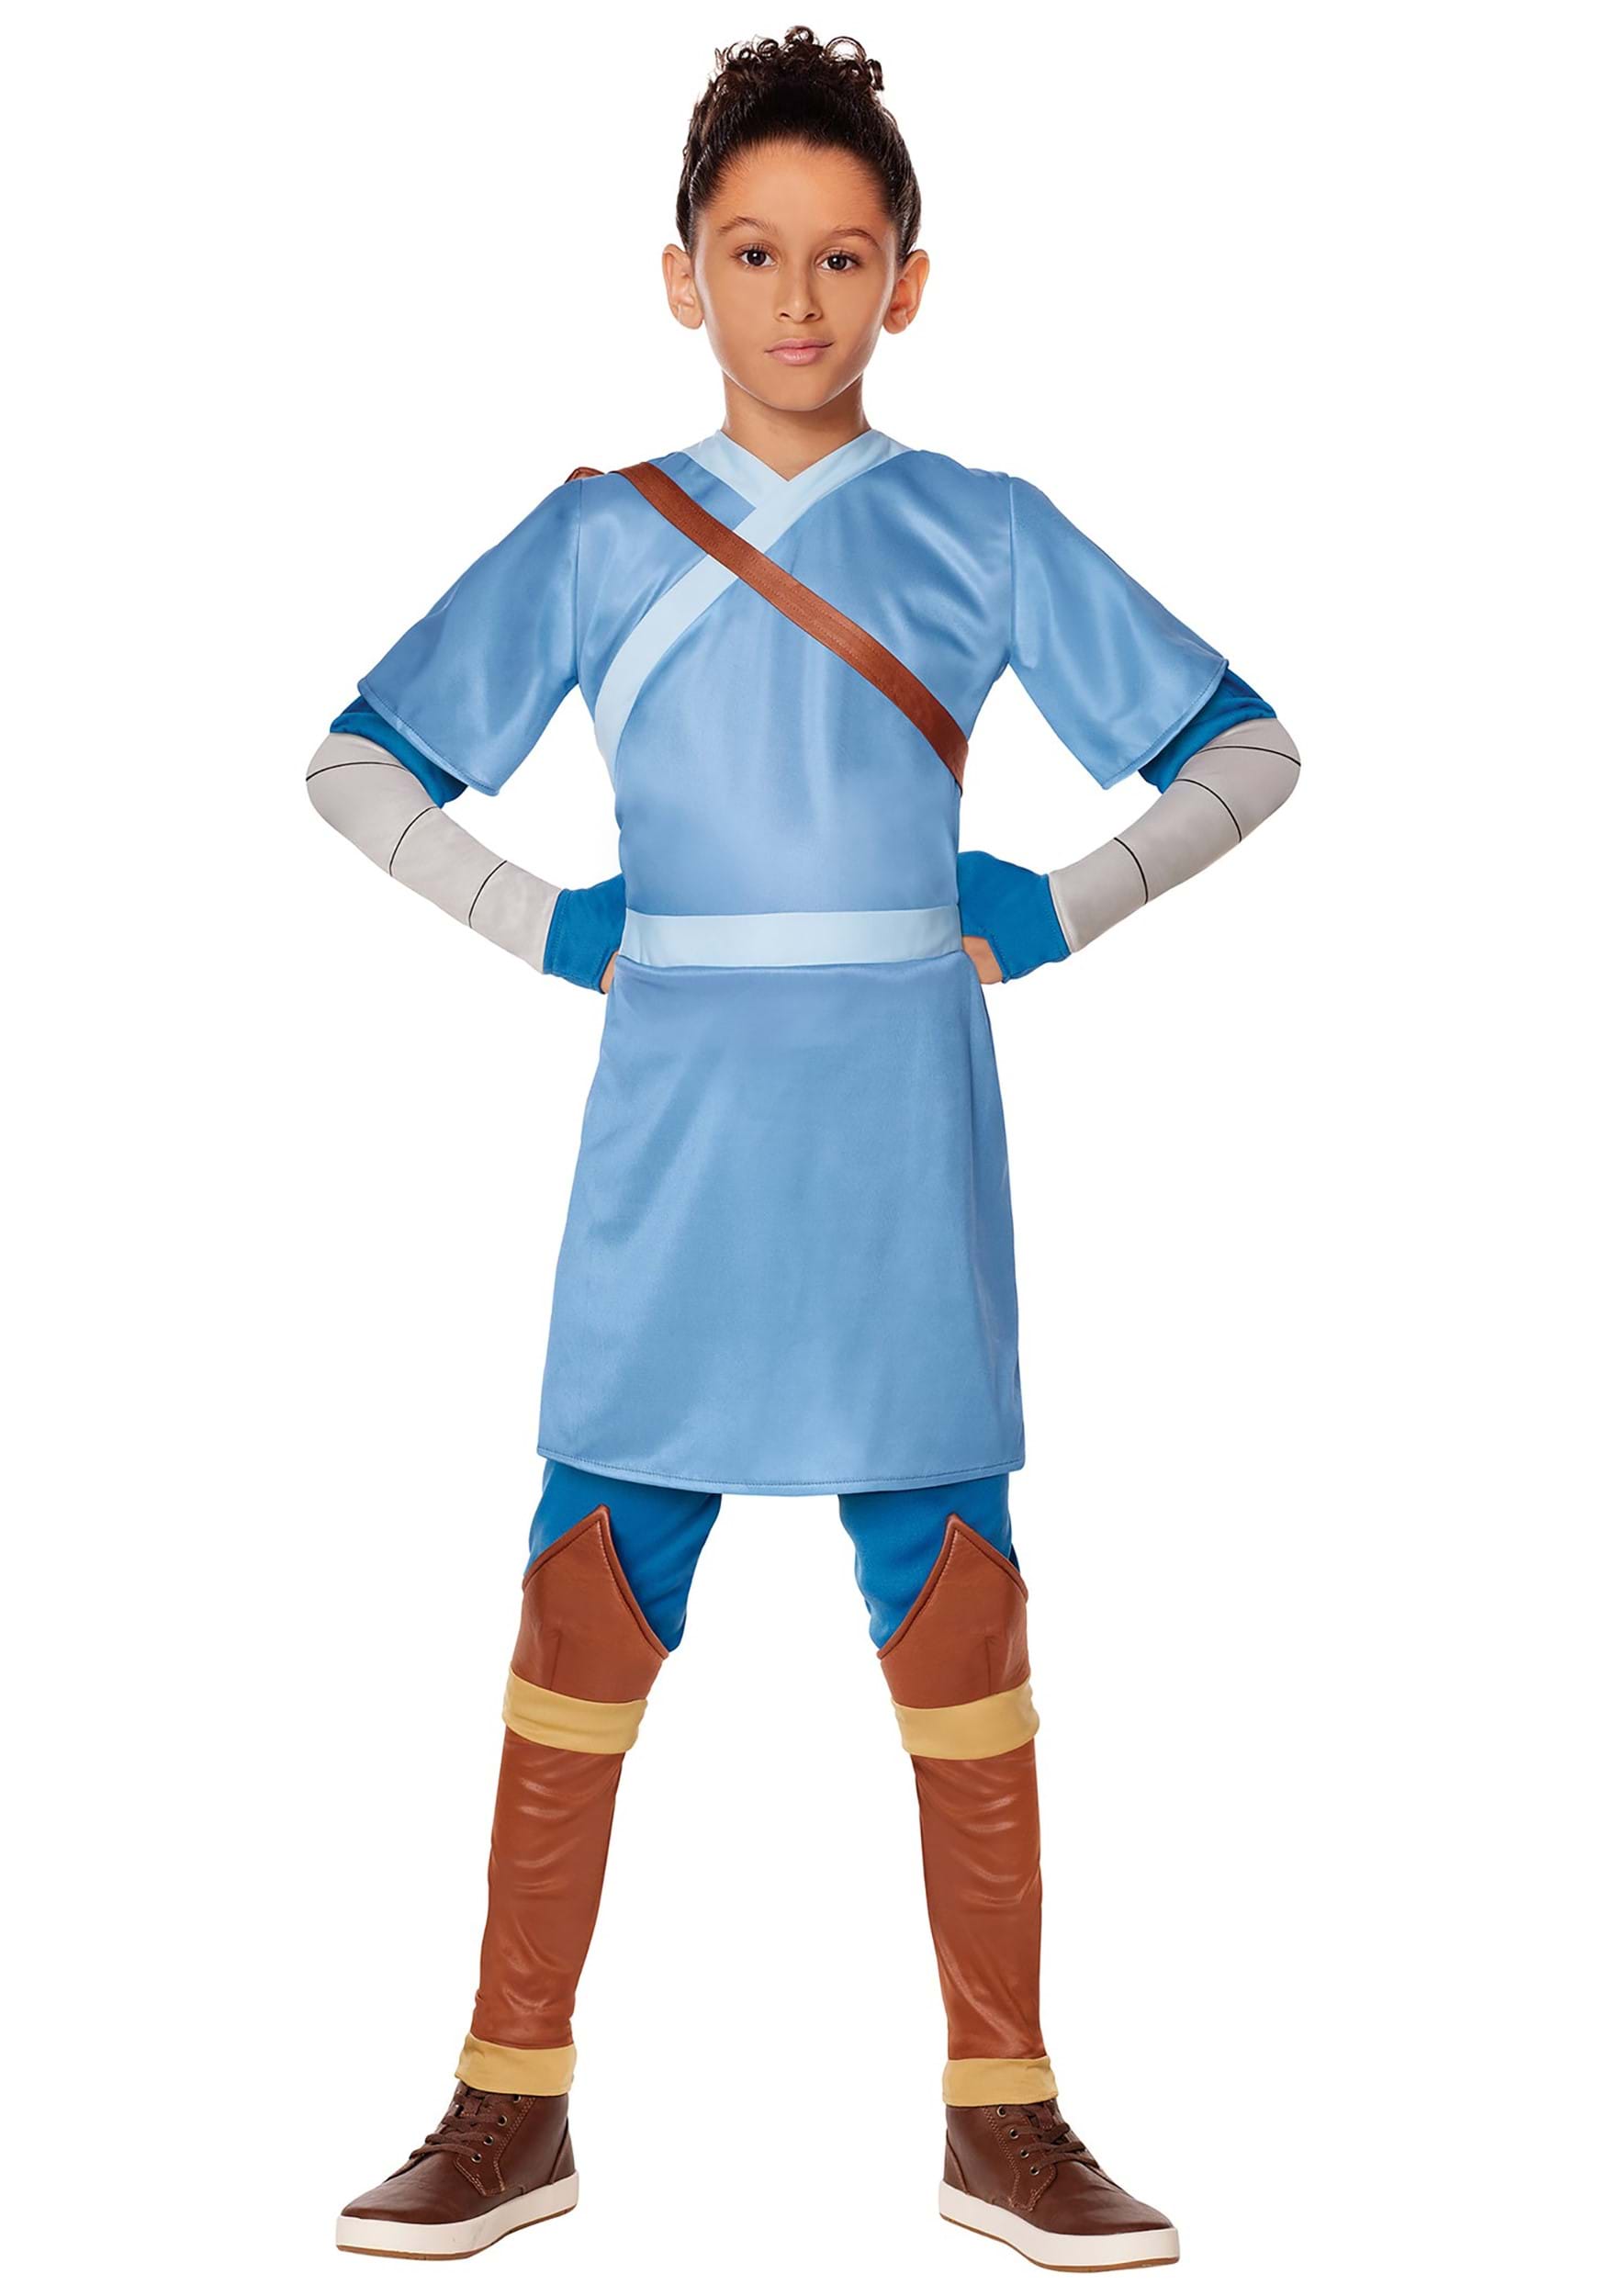 Avatar The Last Airbender Sokka Kid's Costume